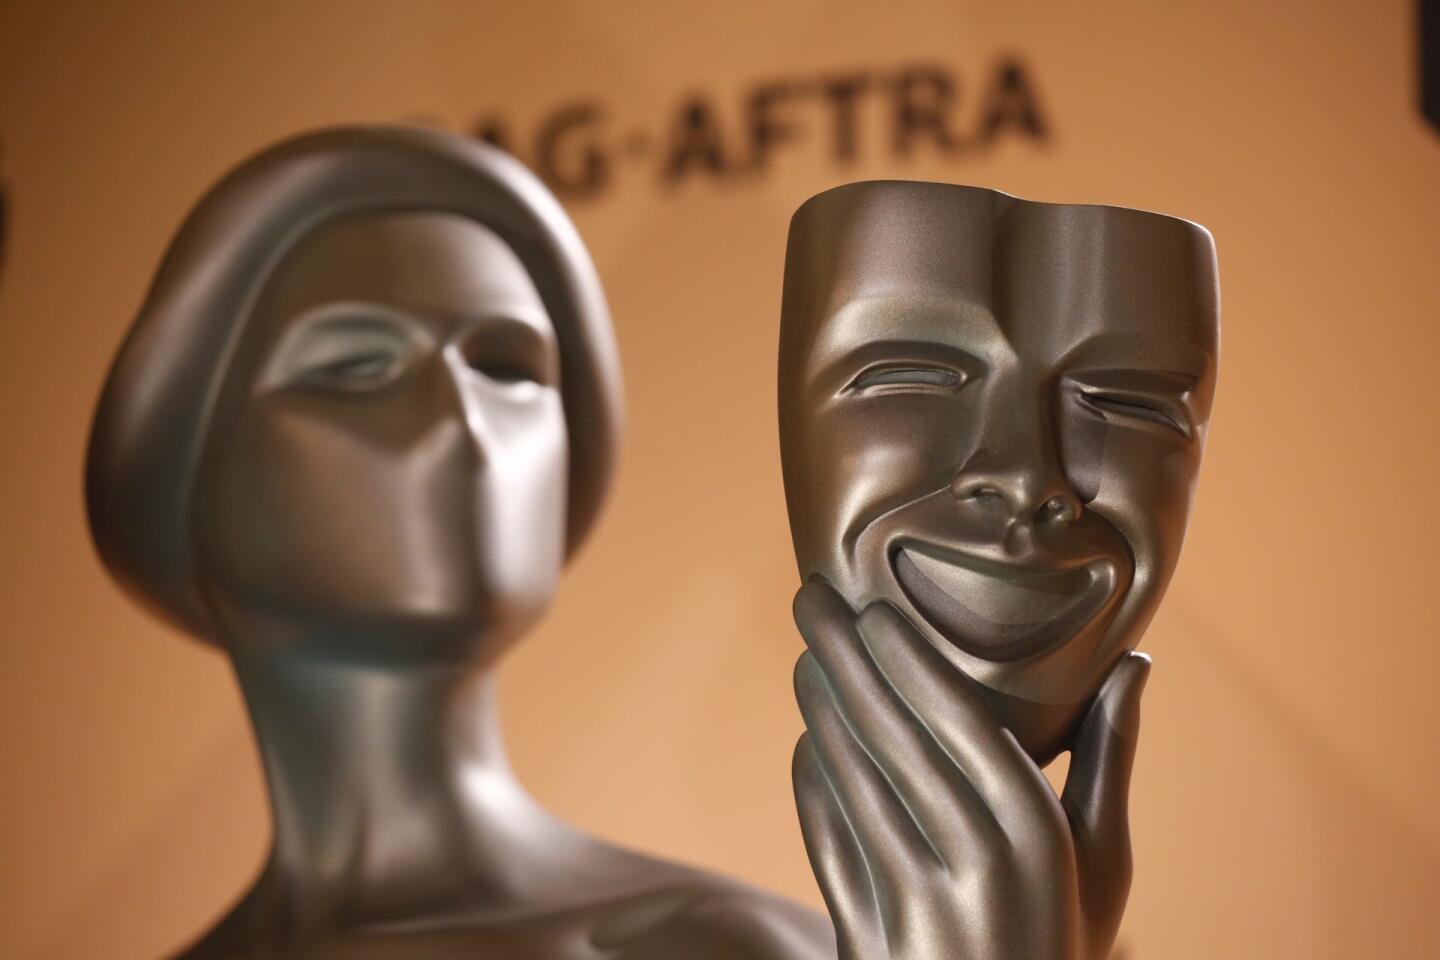 Screen Actors Guild Awards nominations